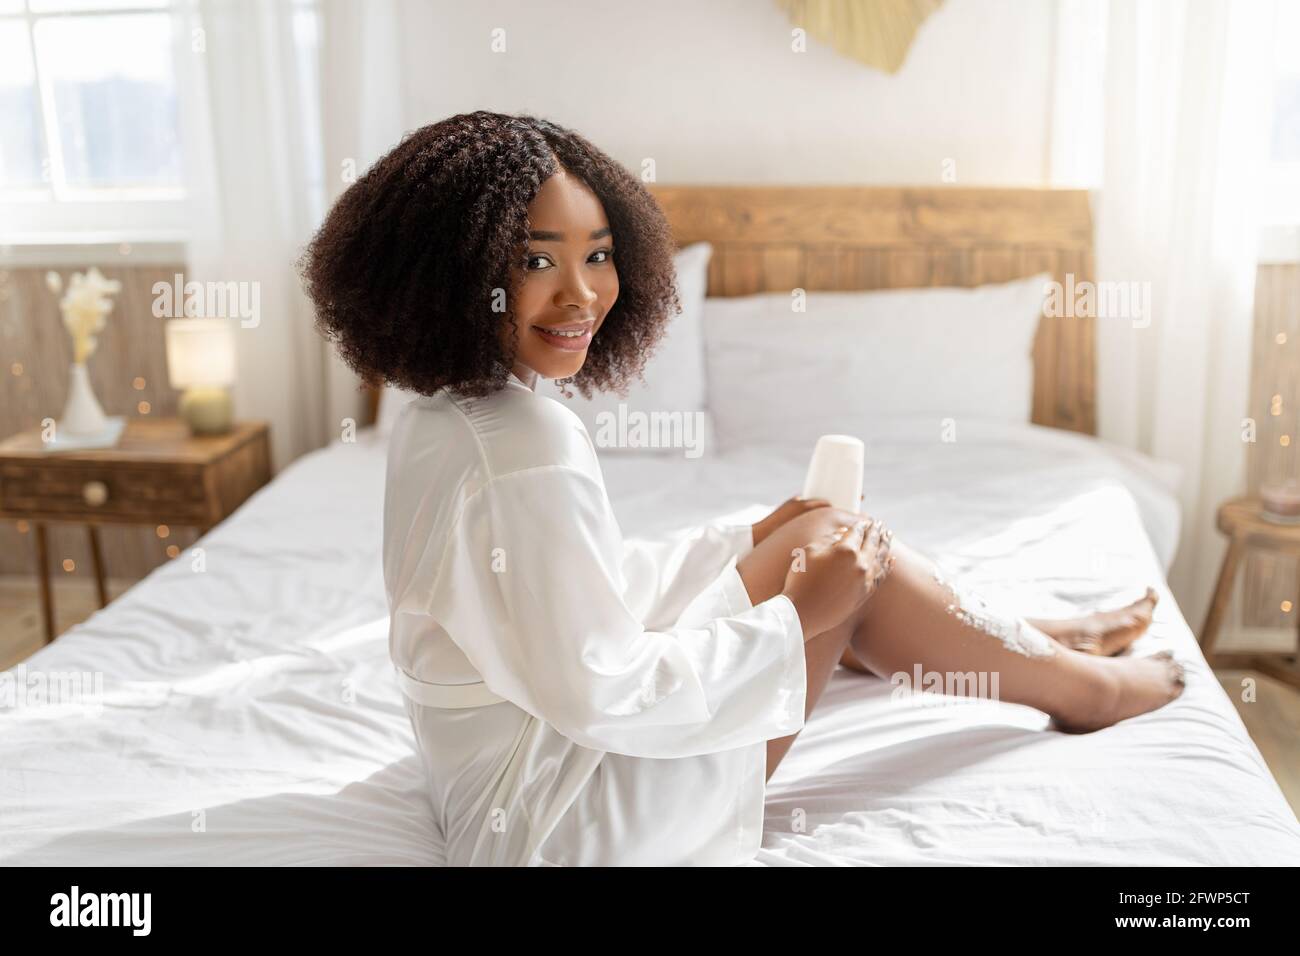 Jolie femme noire appliquant de la mousse de rasage sur ses jambes avant la procédure d'épilation domestique, se dorloter à la maison Banque D'Images